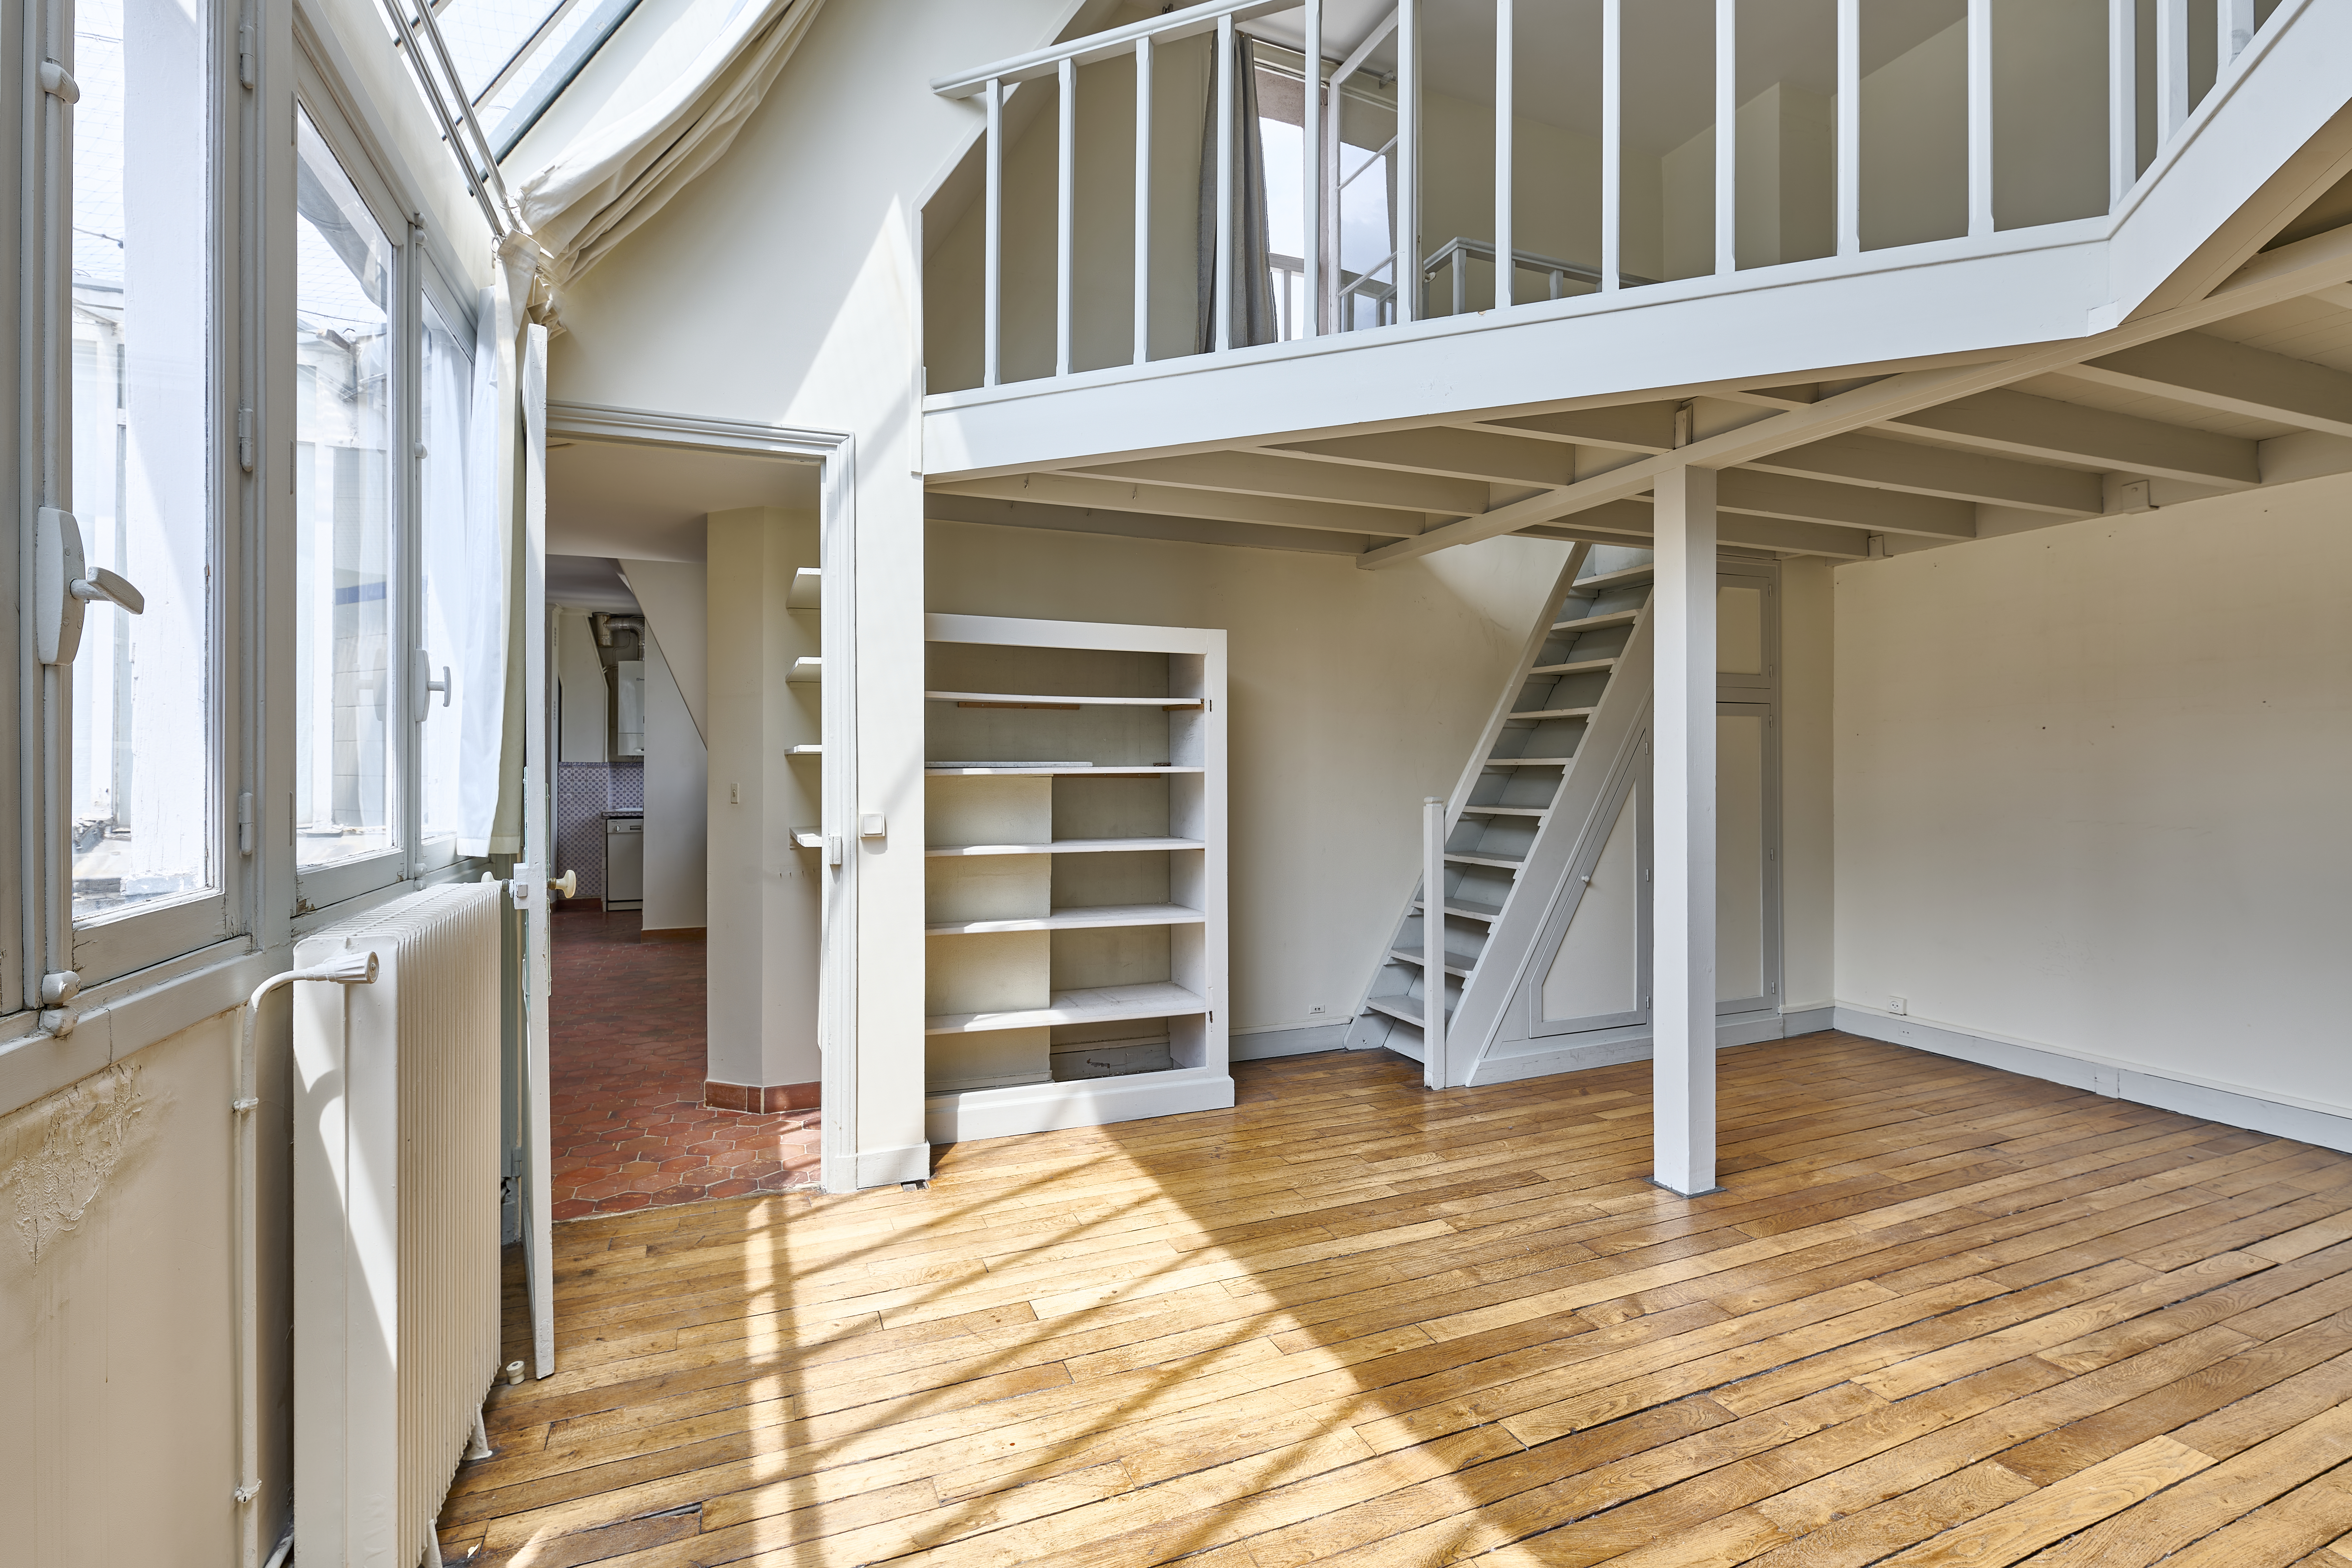 Atelier d’artiste en dernier étage avec vues – Quartier Batignolles/Europe